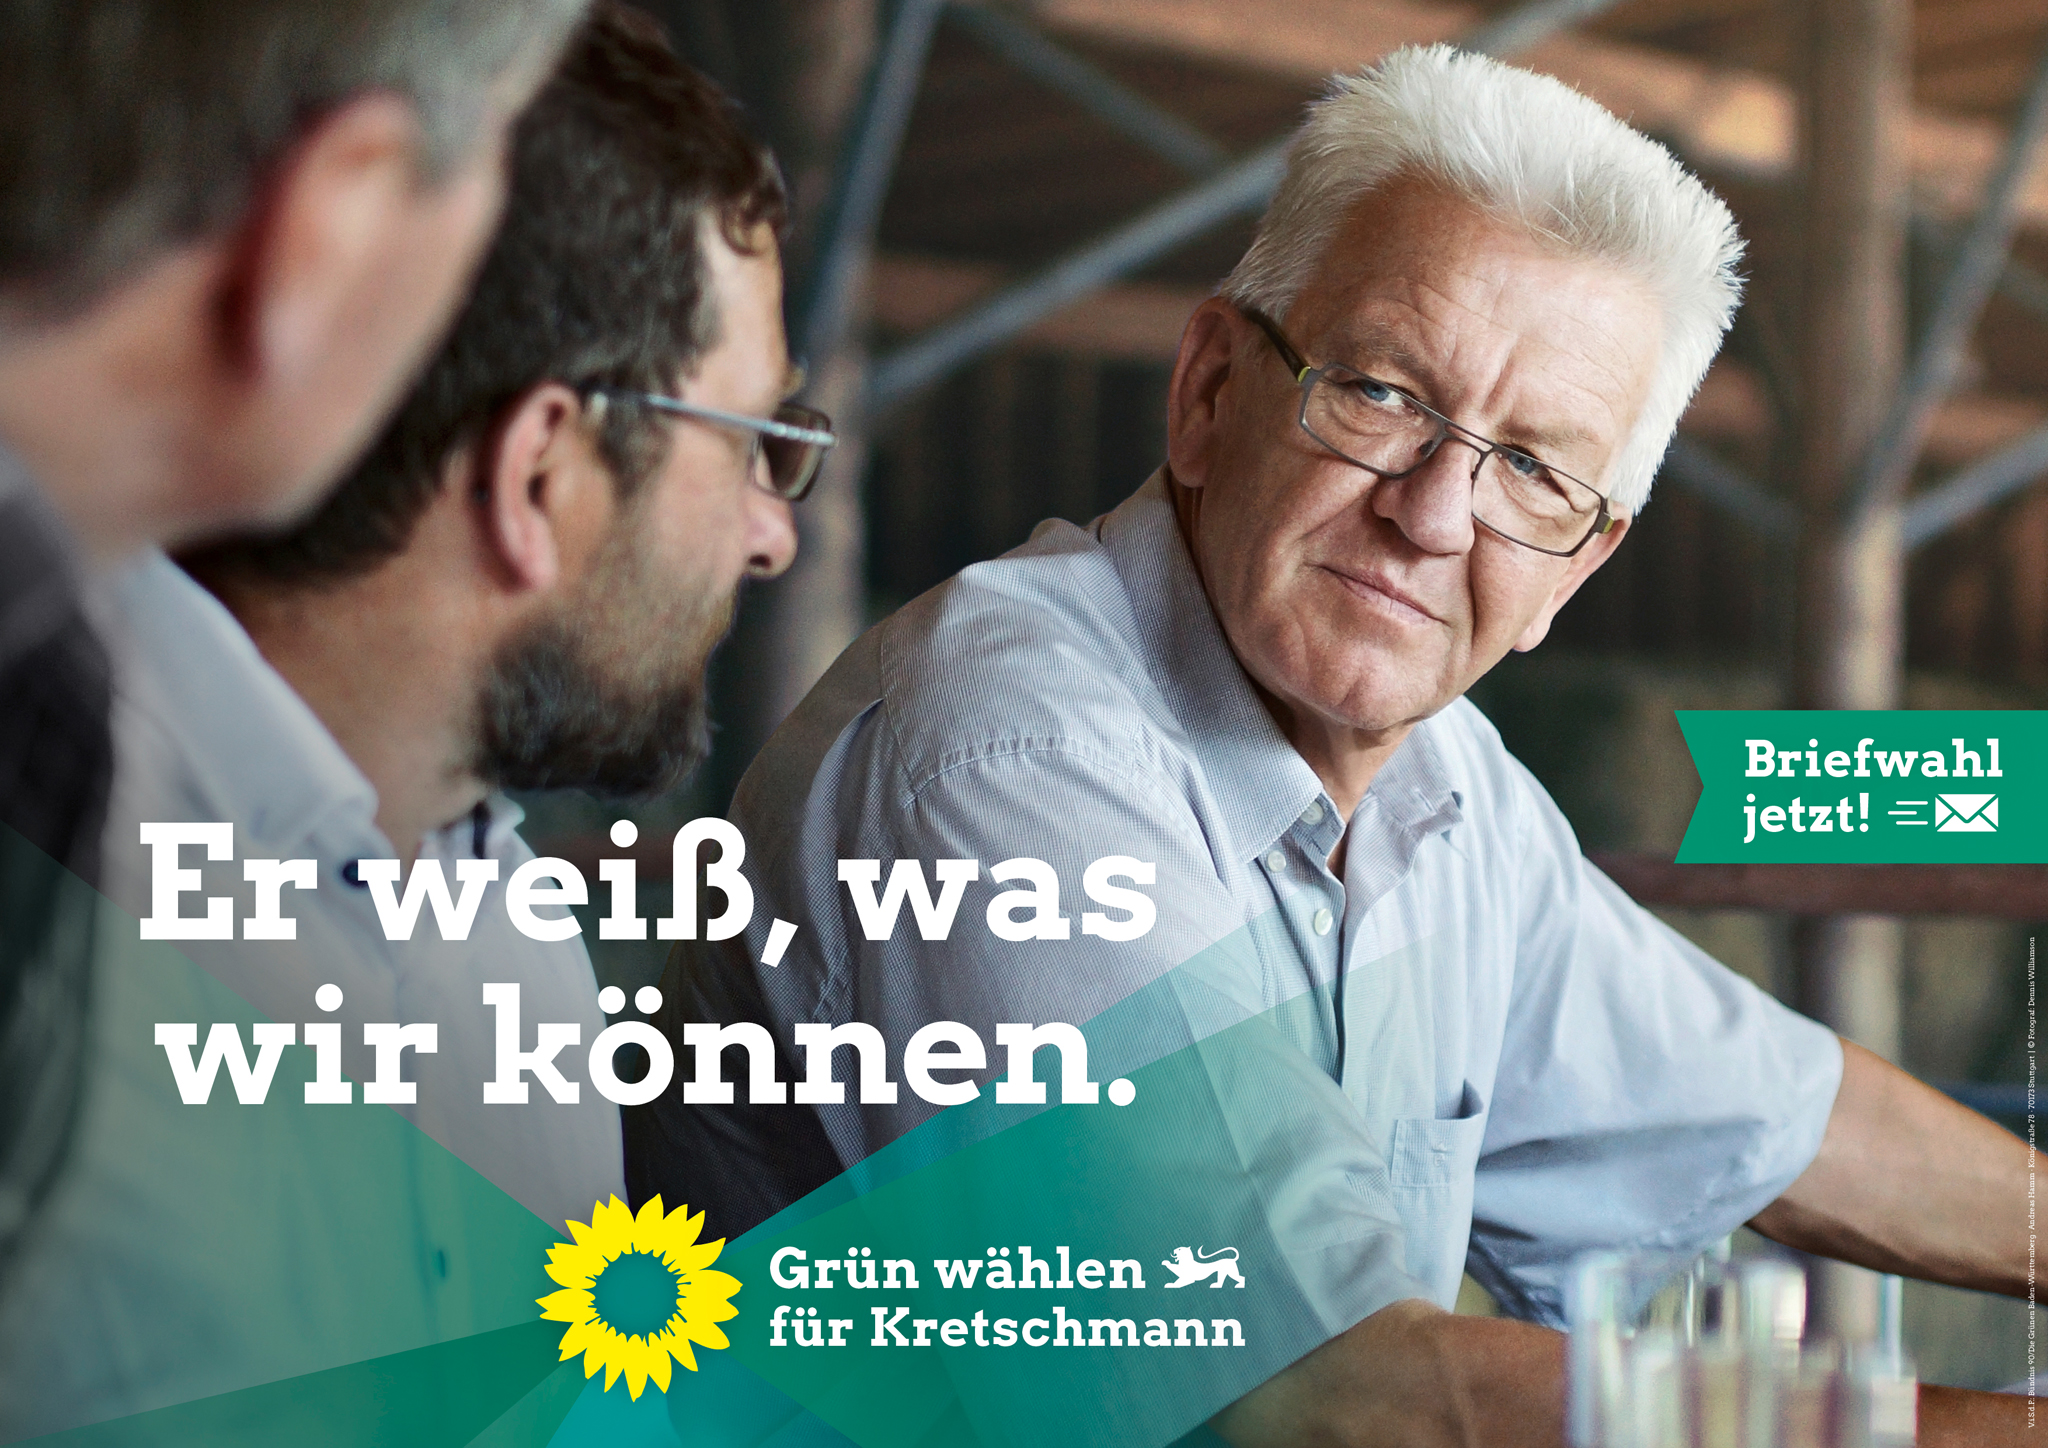 Landtagswahl Baden-Württemberg 2021 Bündnis 90/Die Grünen – Plakat, Quelle: Bündnis 90/Die Grünen Baden-Württemberg